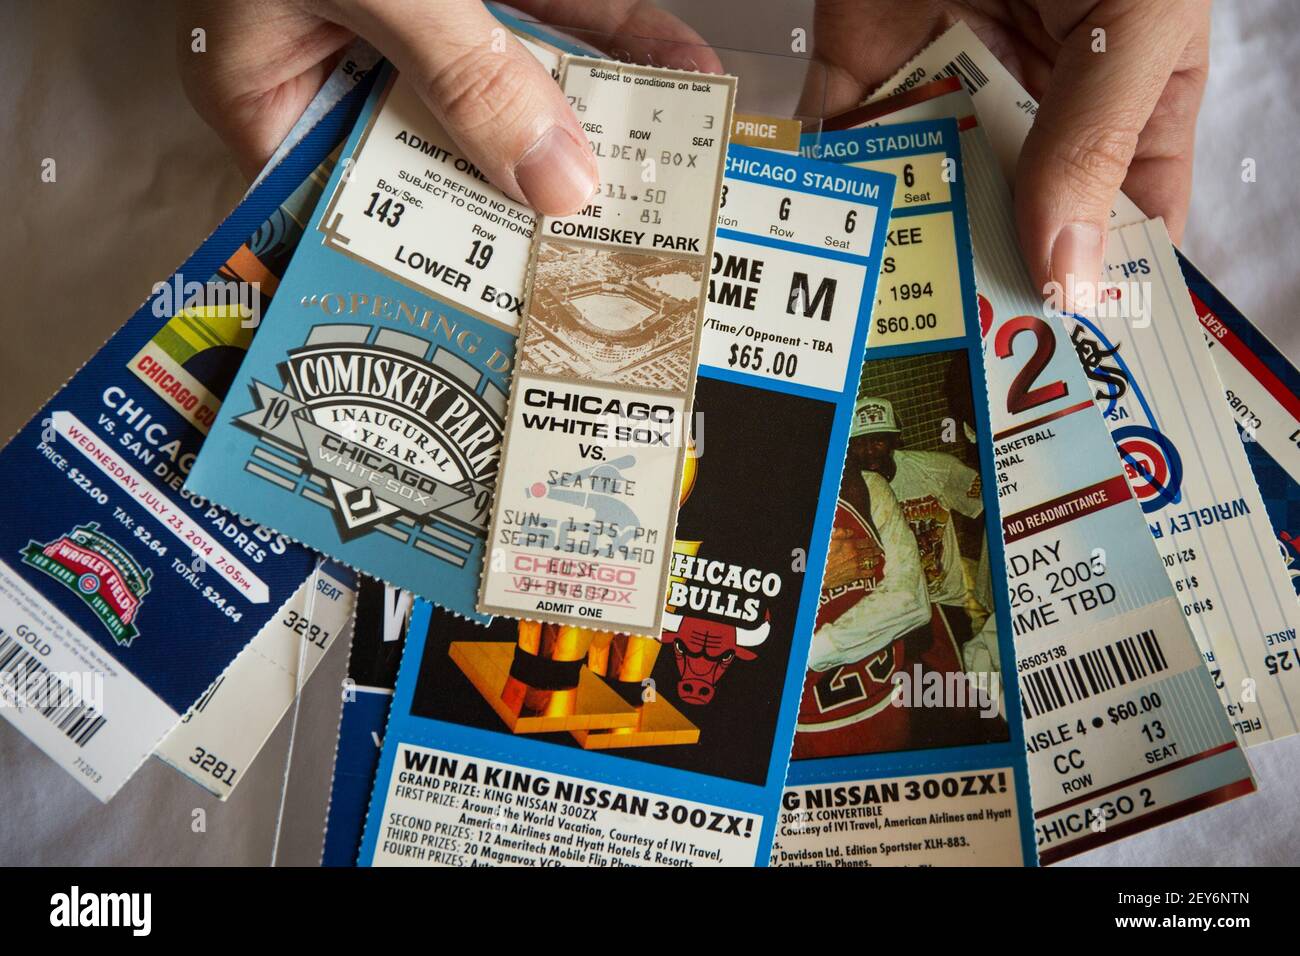 Brian Schwartz, proprietario di cimeli sportivi Schwartz, mostra i biglietti d'epoca per gli eventi sportivi a Chicago il 25 novembre 2014 presso il suo magazzino di Buffalo Grove, Ill. (Foto di Zbigniew Bzdak/Chicago Tribune/TNS/Sipa USA) Foto Stock